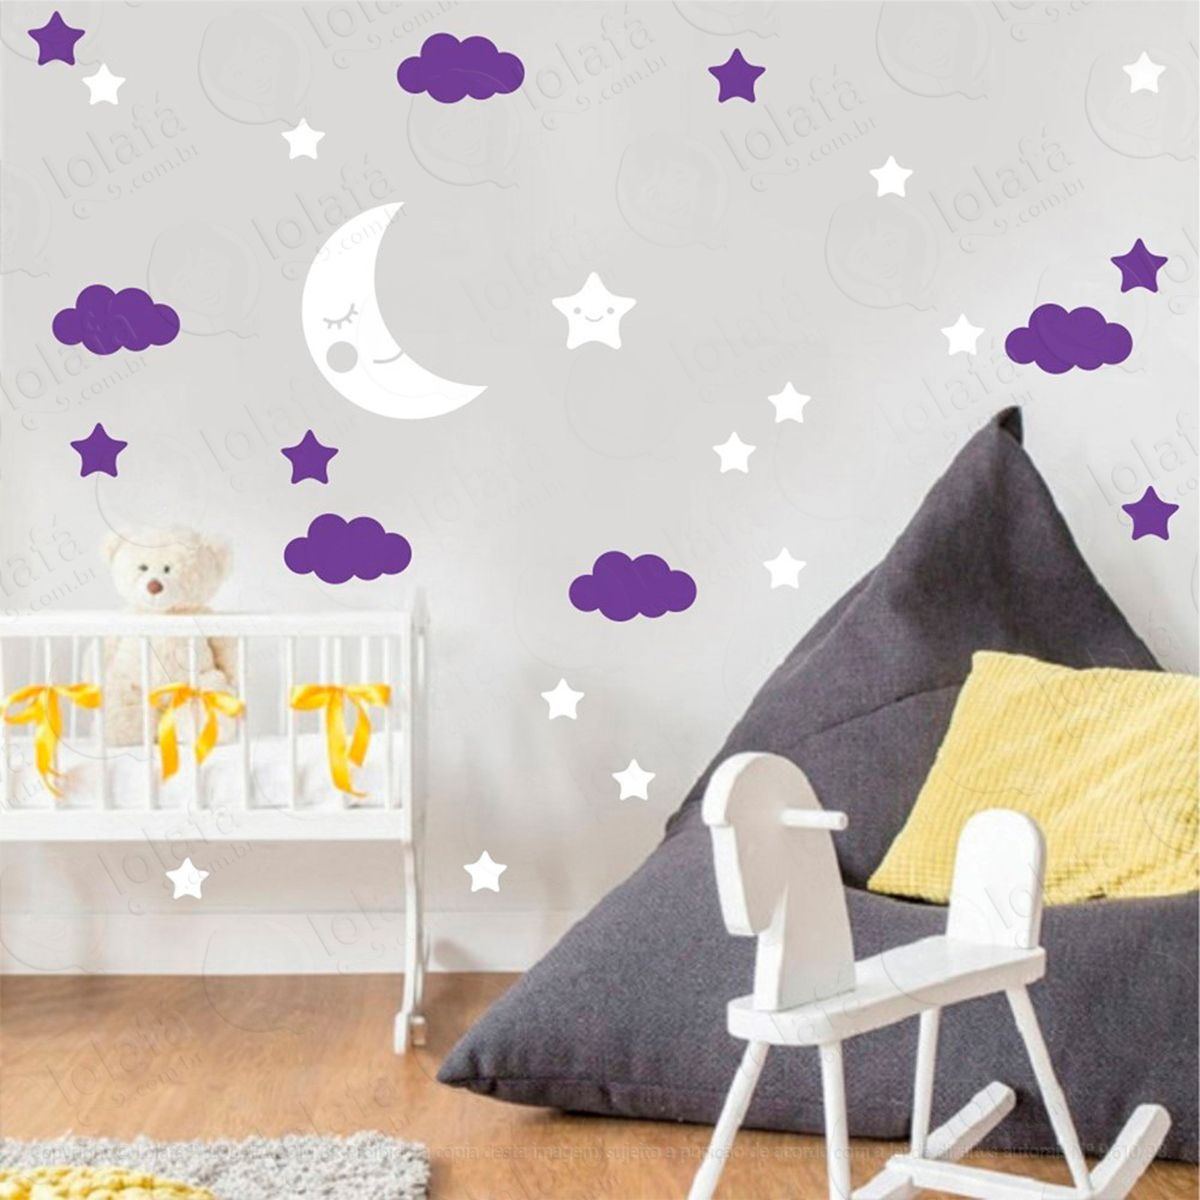 adesivos lua nuvens e estrelas 38 peças adesivos para quarto de bebê infantil - mod:657